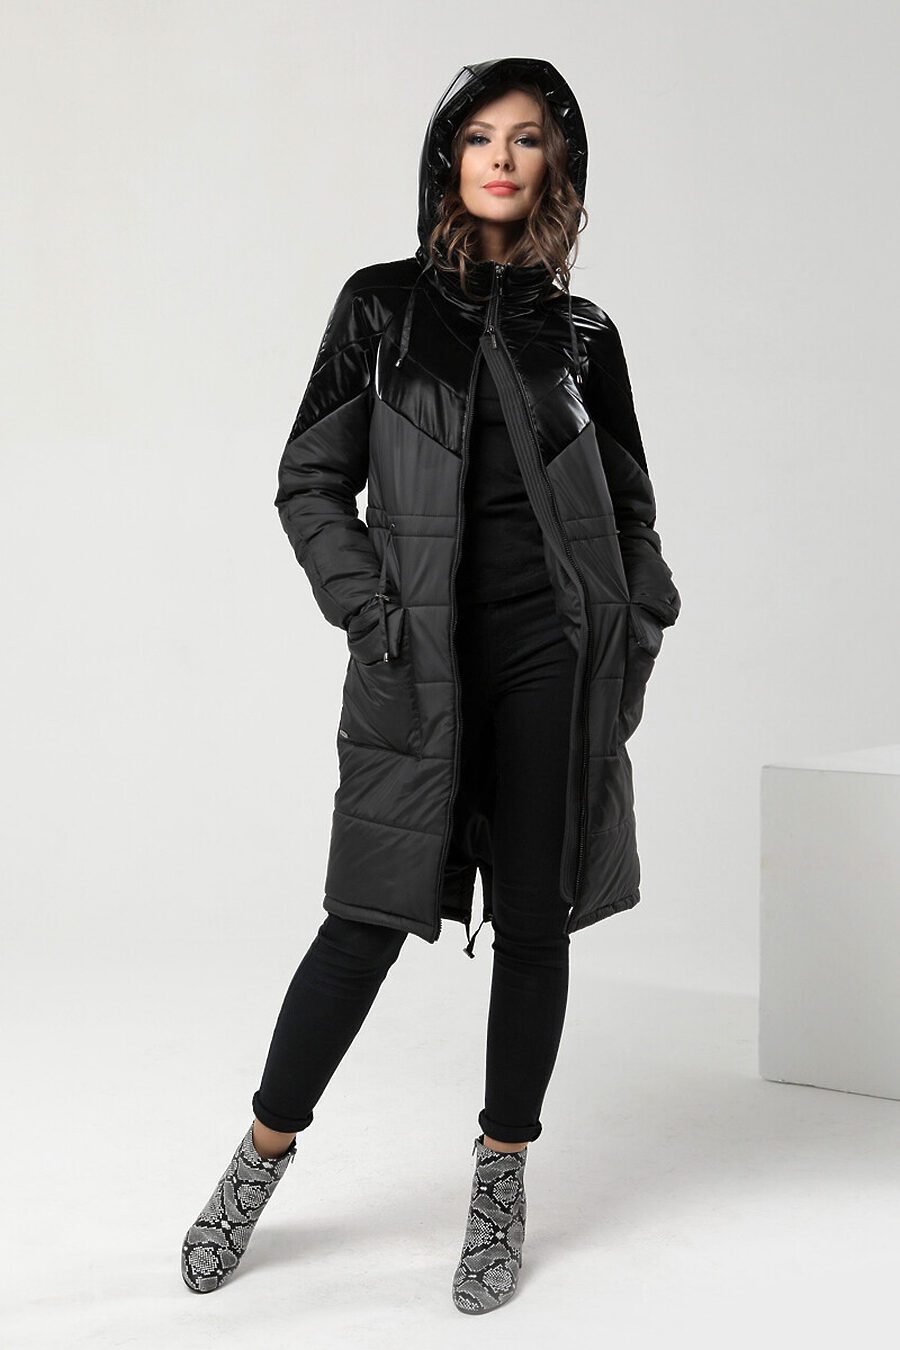 Пальто DIWAY (684854), купить в Moyo.moda